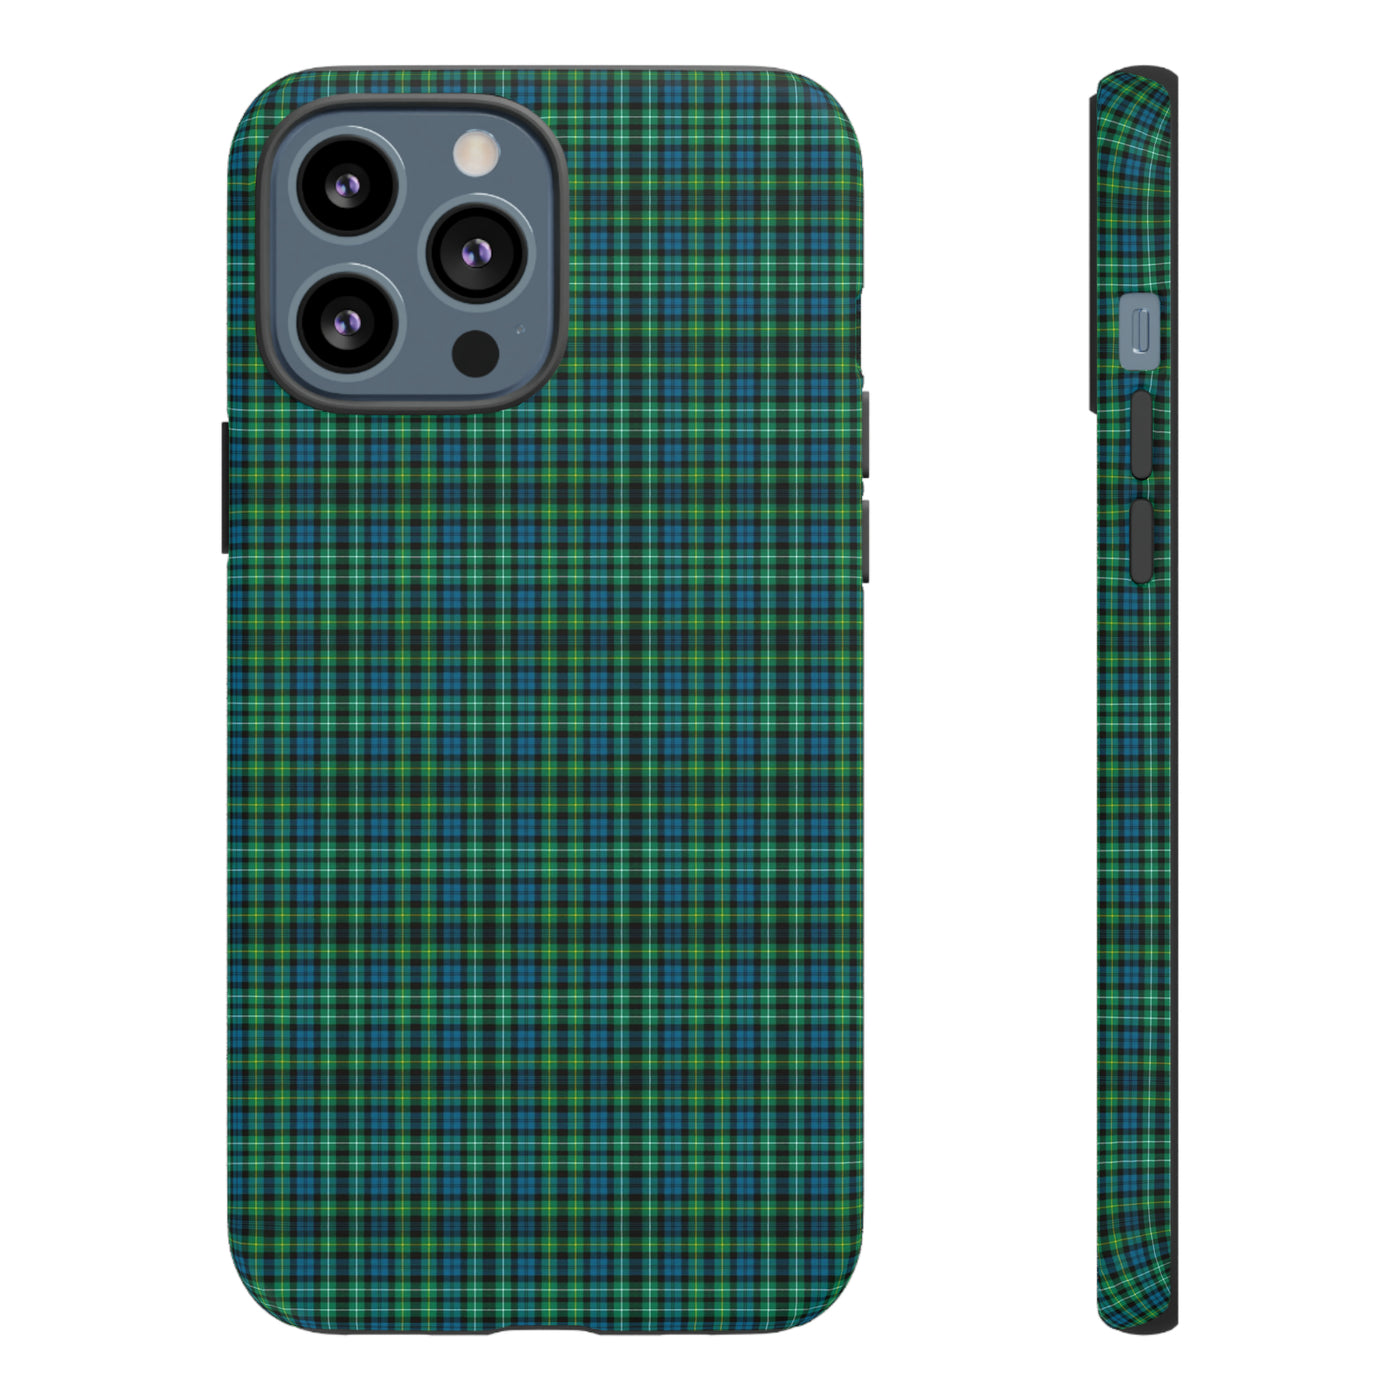 Cute IPhone Case | iPhone 15 Case | iPhone 15 Pro Max Case, Iphone 14 Case, Iphone 14 Pro Max Case IPhone Case for Scots, Campbell Tartan